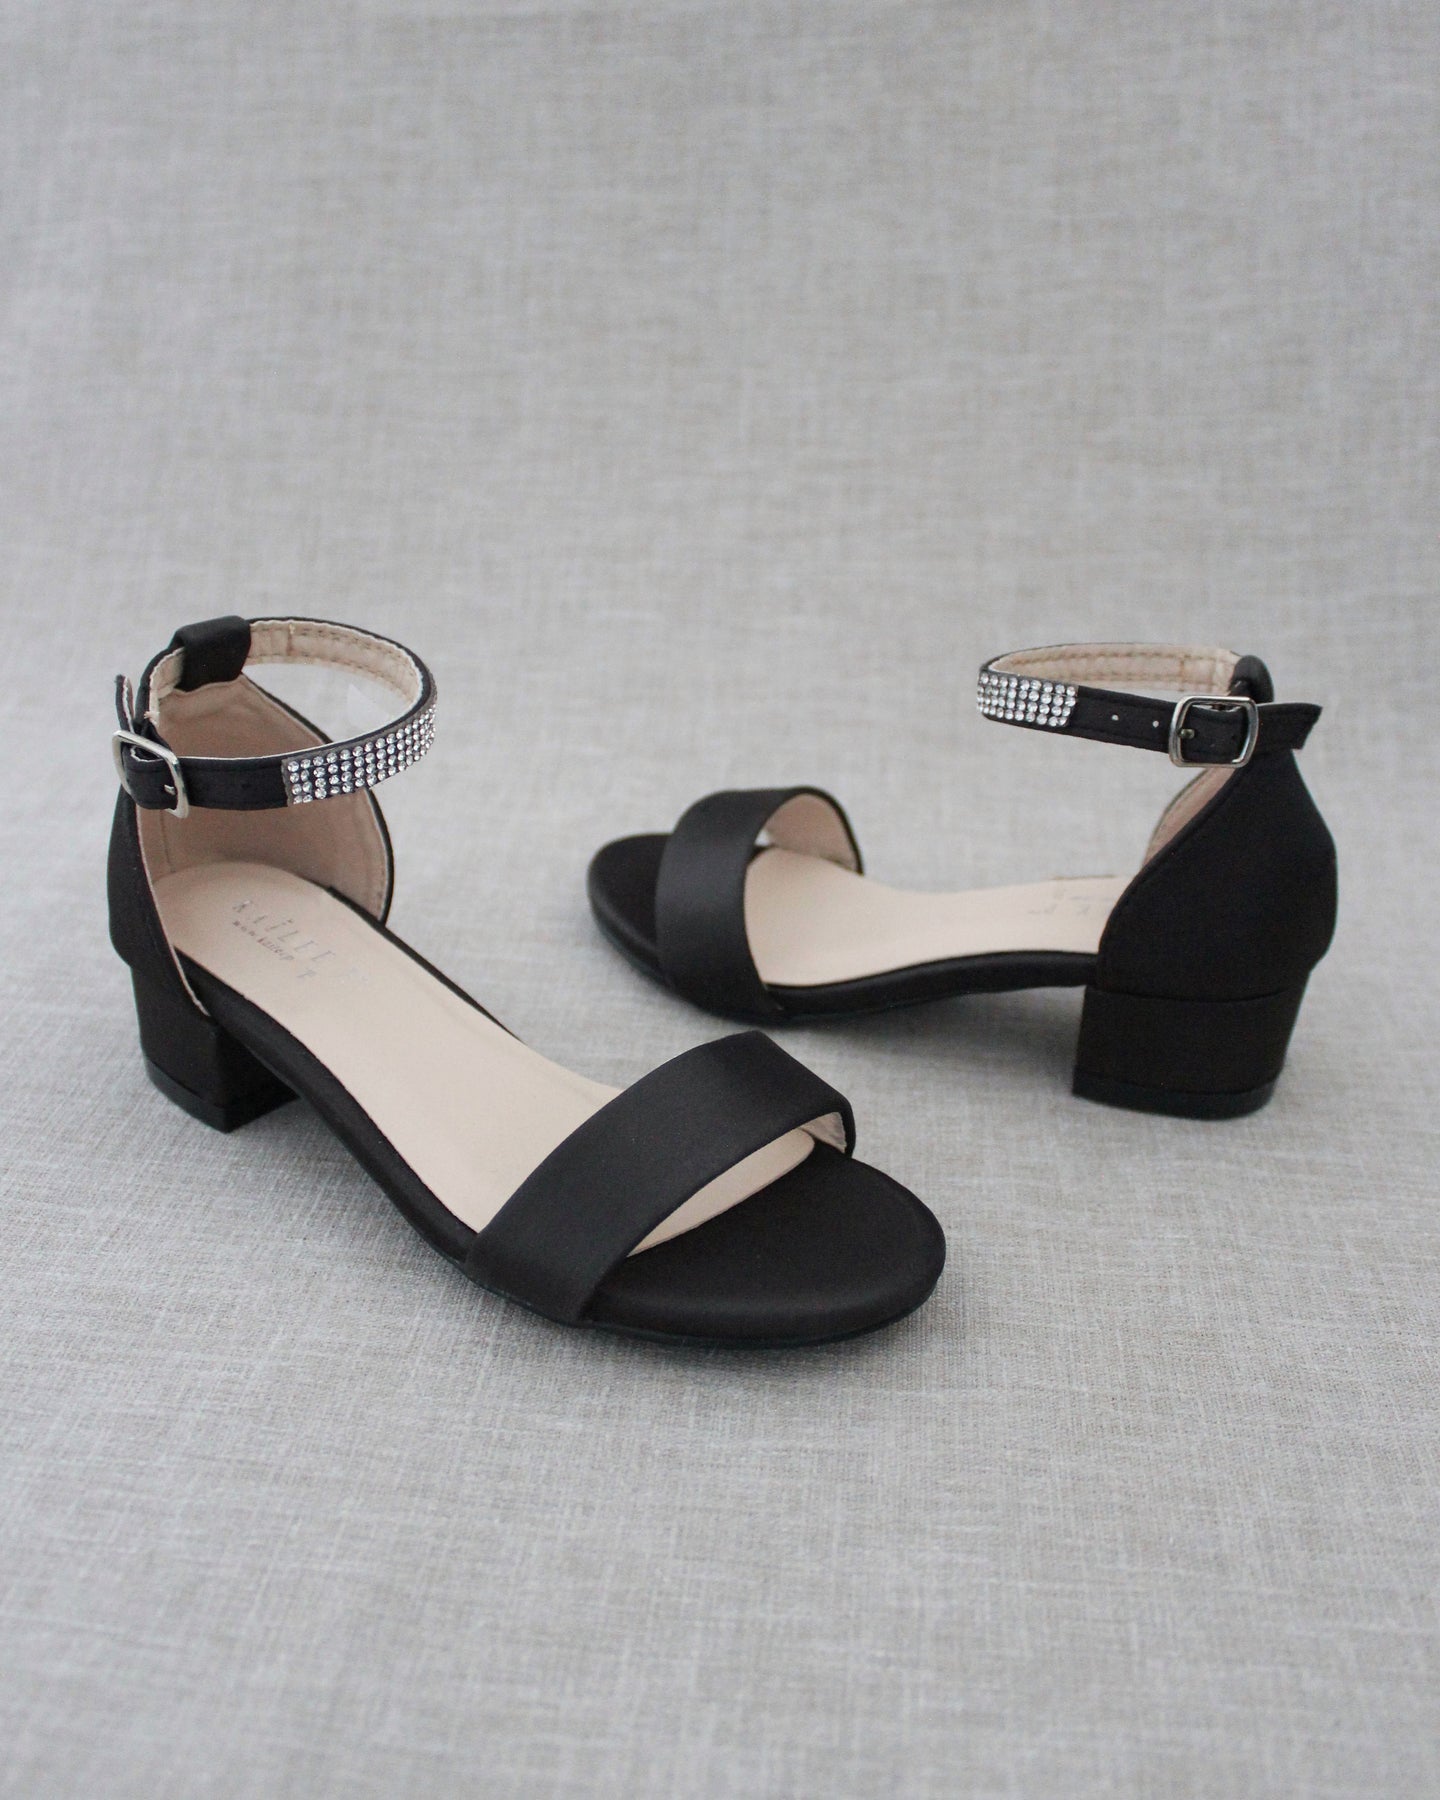 Buy FASHION HEEL Block Heels Sandals For Women And Girls online |  Looksgud.in